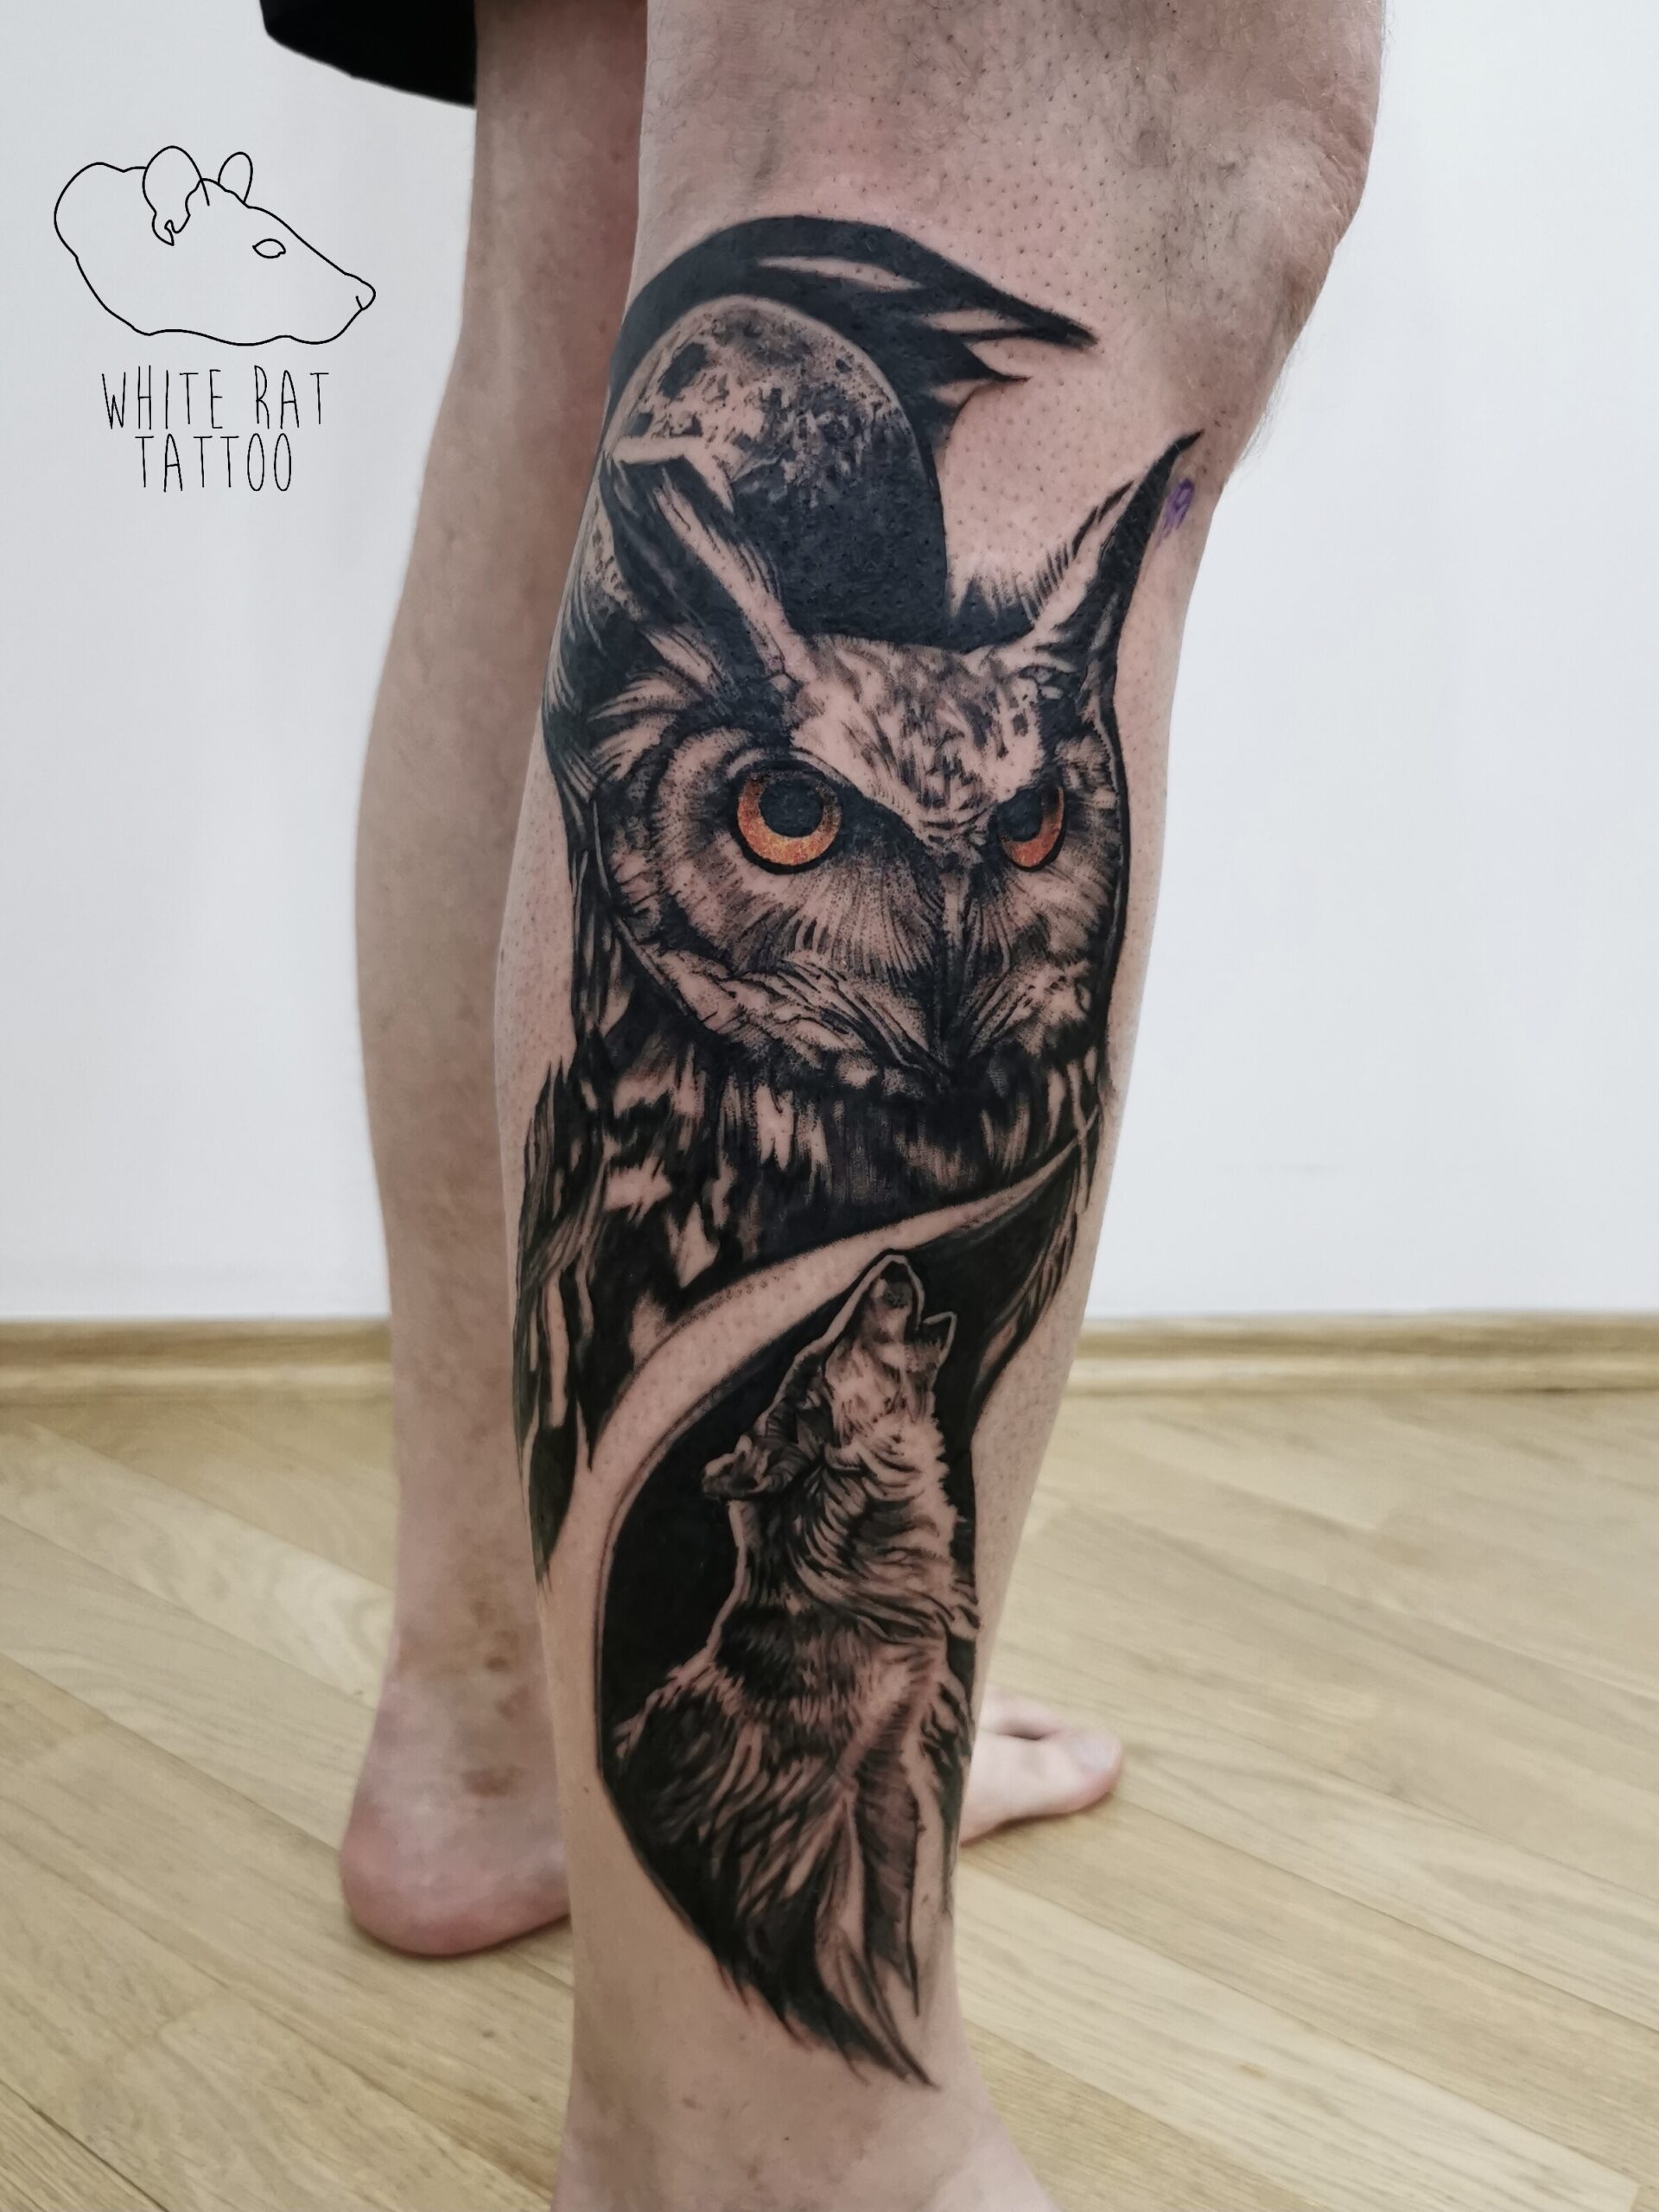 White Rat Tattoo Studio Tatuażu Warszawa Tomek Realistyczny Tatuaż Sowa